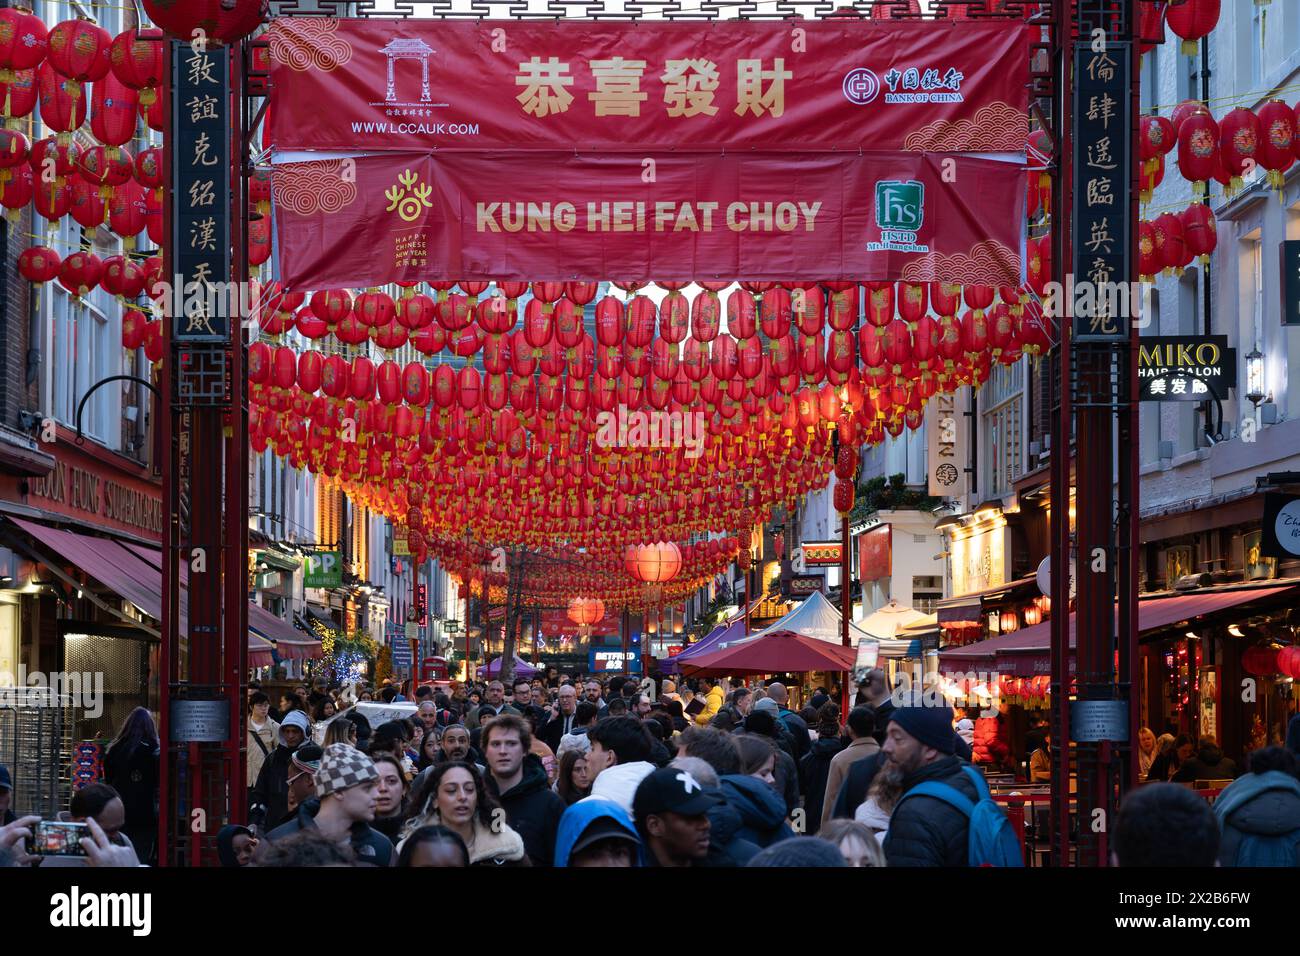 Une bannière du nouvel an chinois et des touristes sur Gerrard Street, le centre de Chinatown, une enclave ethnique dans la ville de Westminster, Londres. Angleterre Banque D'Images